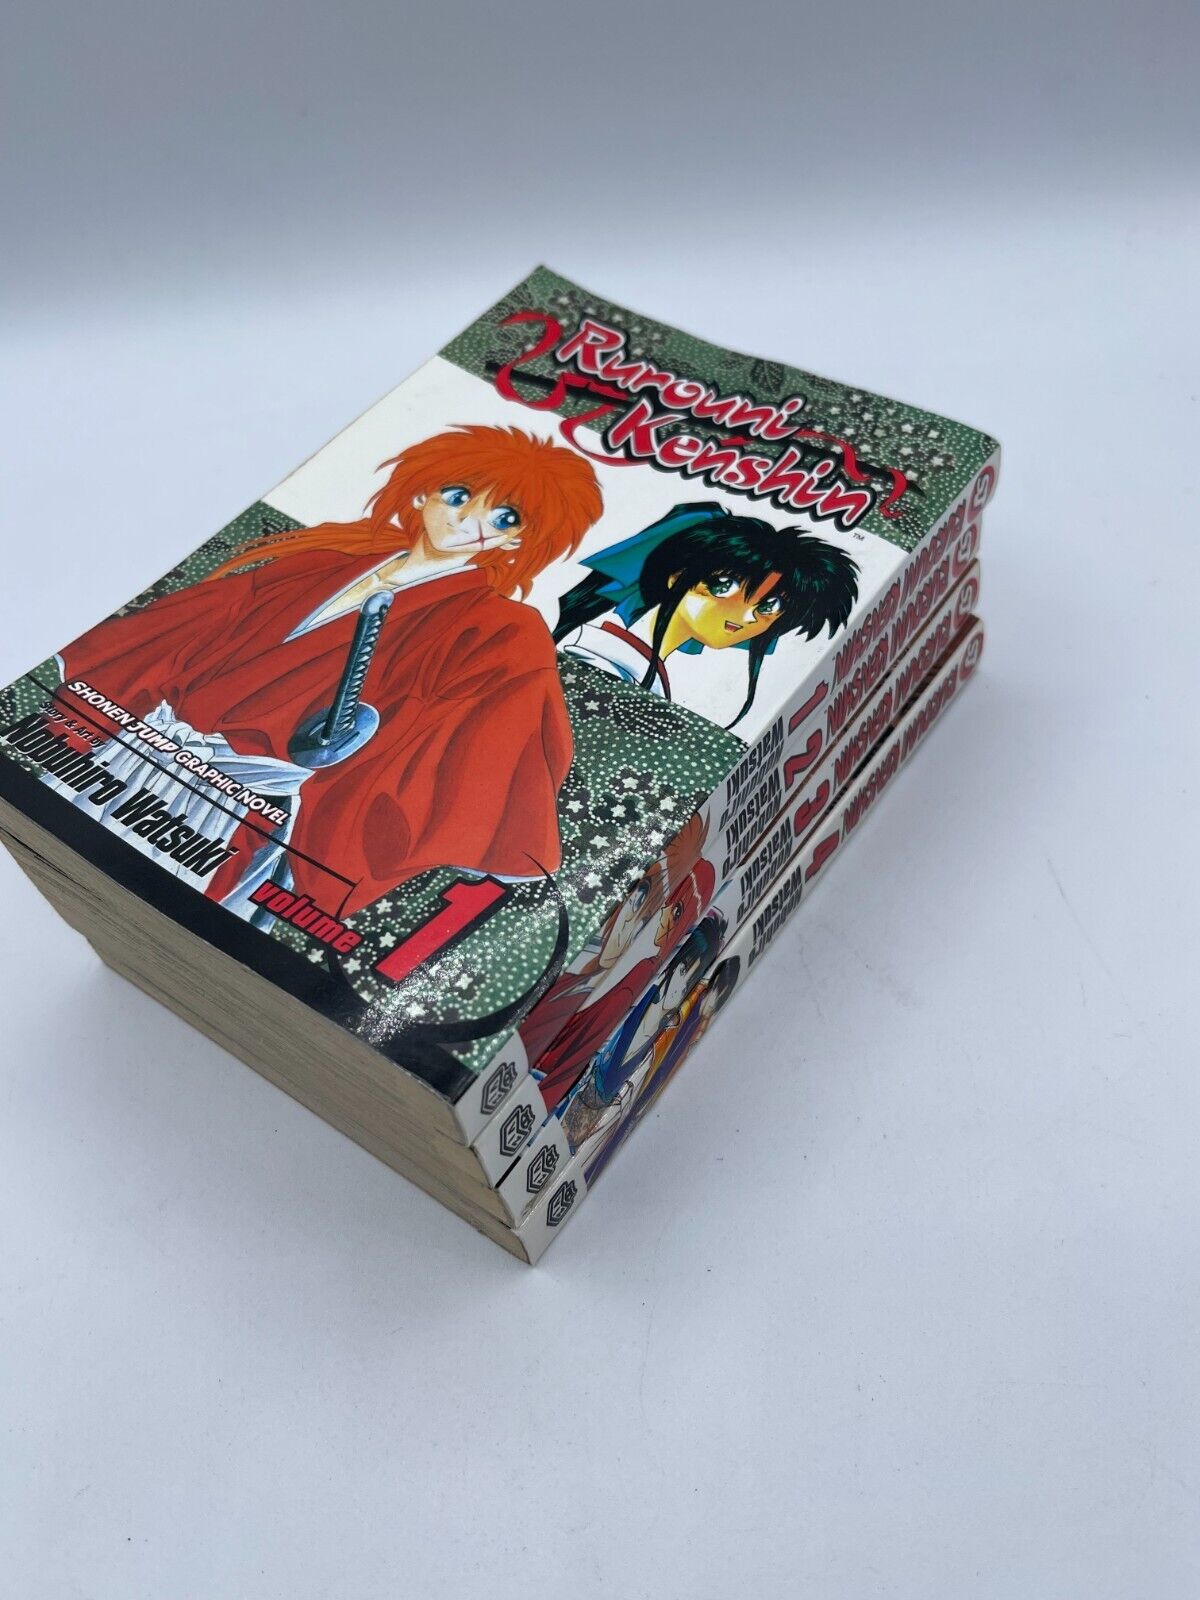 Rurouni Kenshin Vol. 1 -4 Manga Shonen Jump Graphic Novel Nobuhiro Watsuki PB